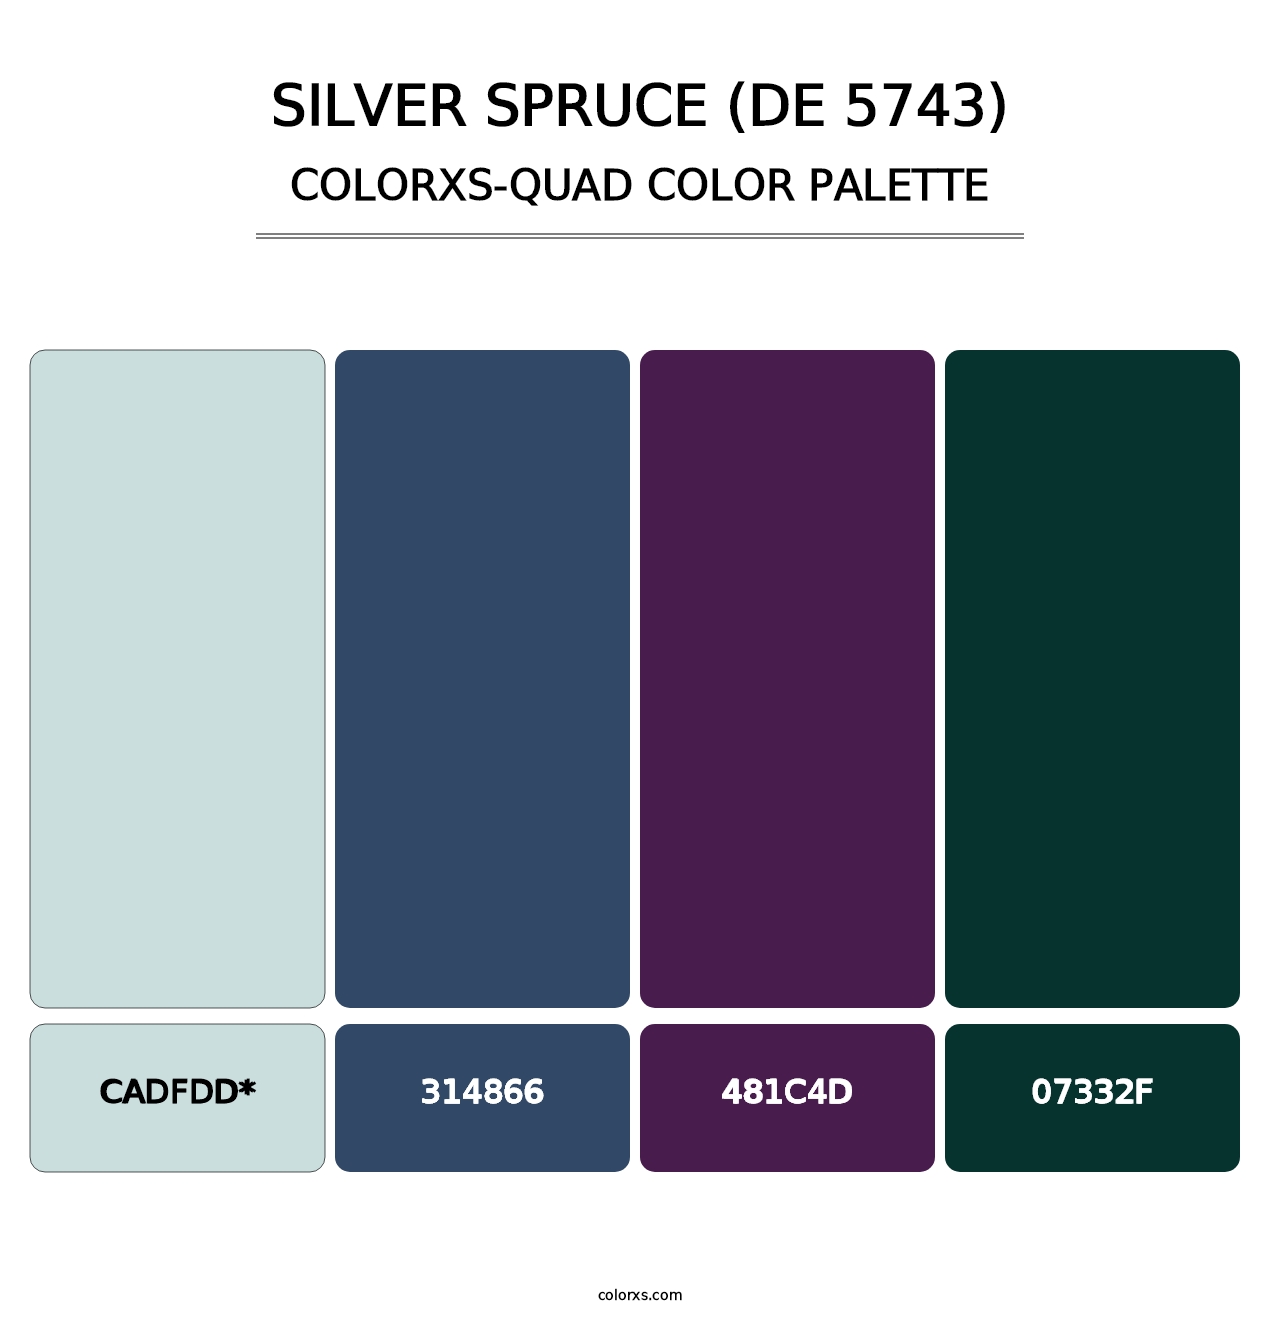 Silver Spruce (DE 5743) - Colorxs Quad Palette